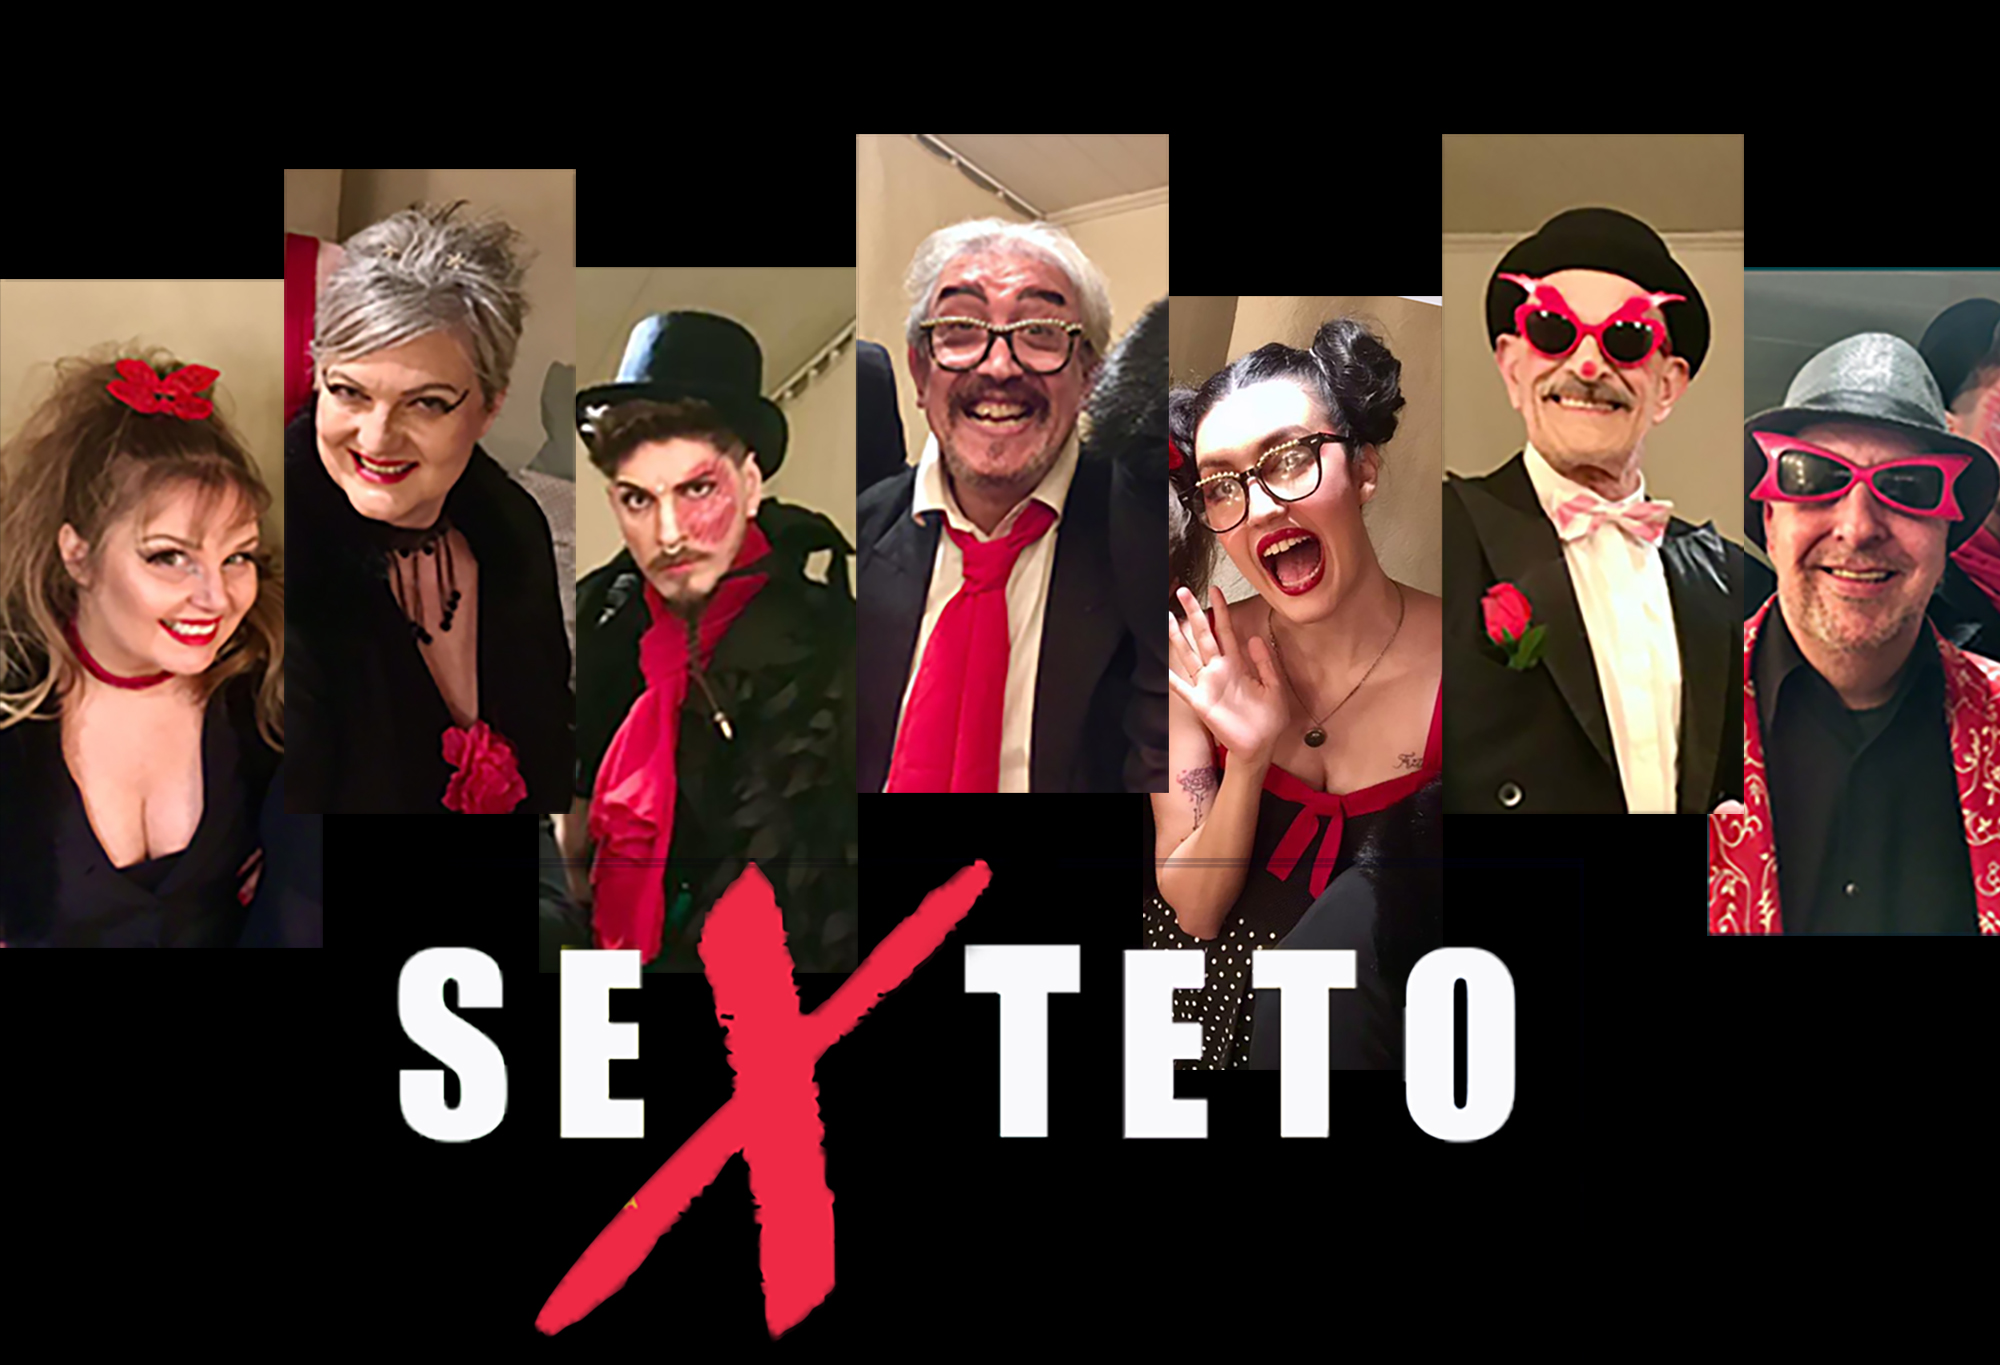 Porto Verão Alegre “sex Teto” Faz única Apresentação No Teatro Do Sesc Agenda Música 7467